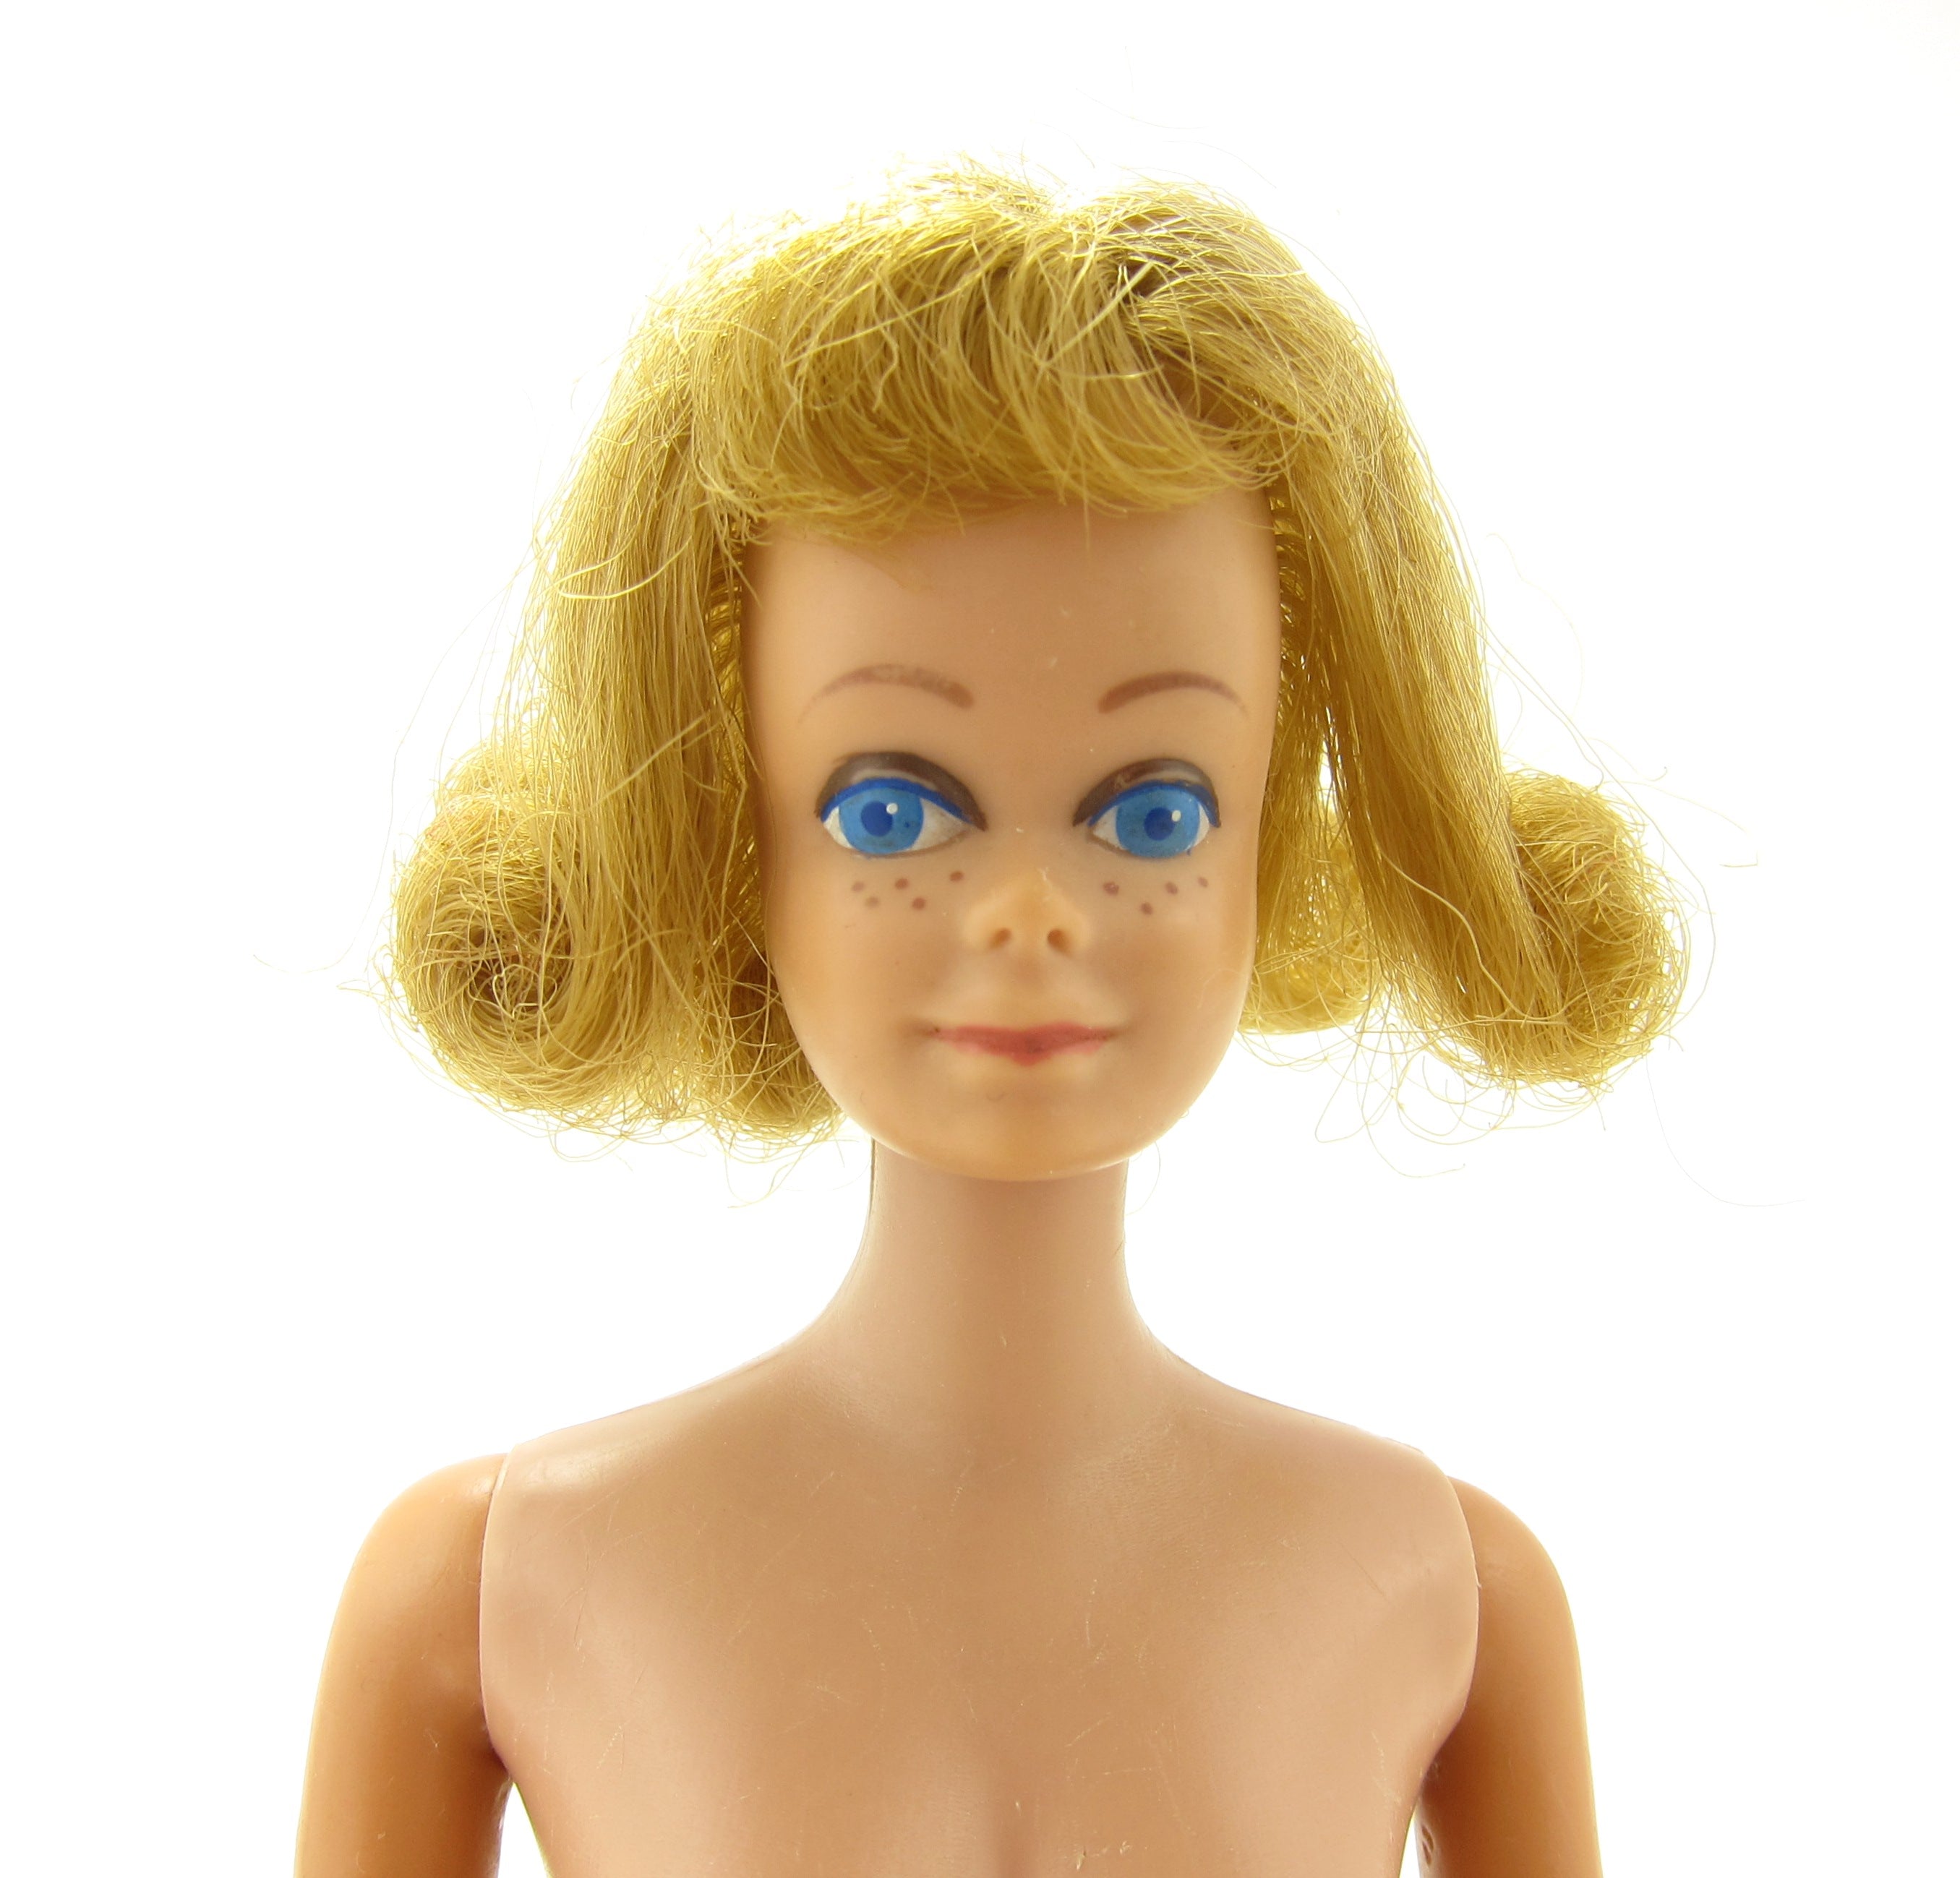 Vintage 1962 Midge doll with blonde hair, blue eyes, freckles